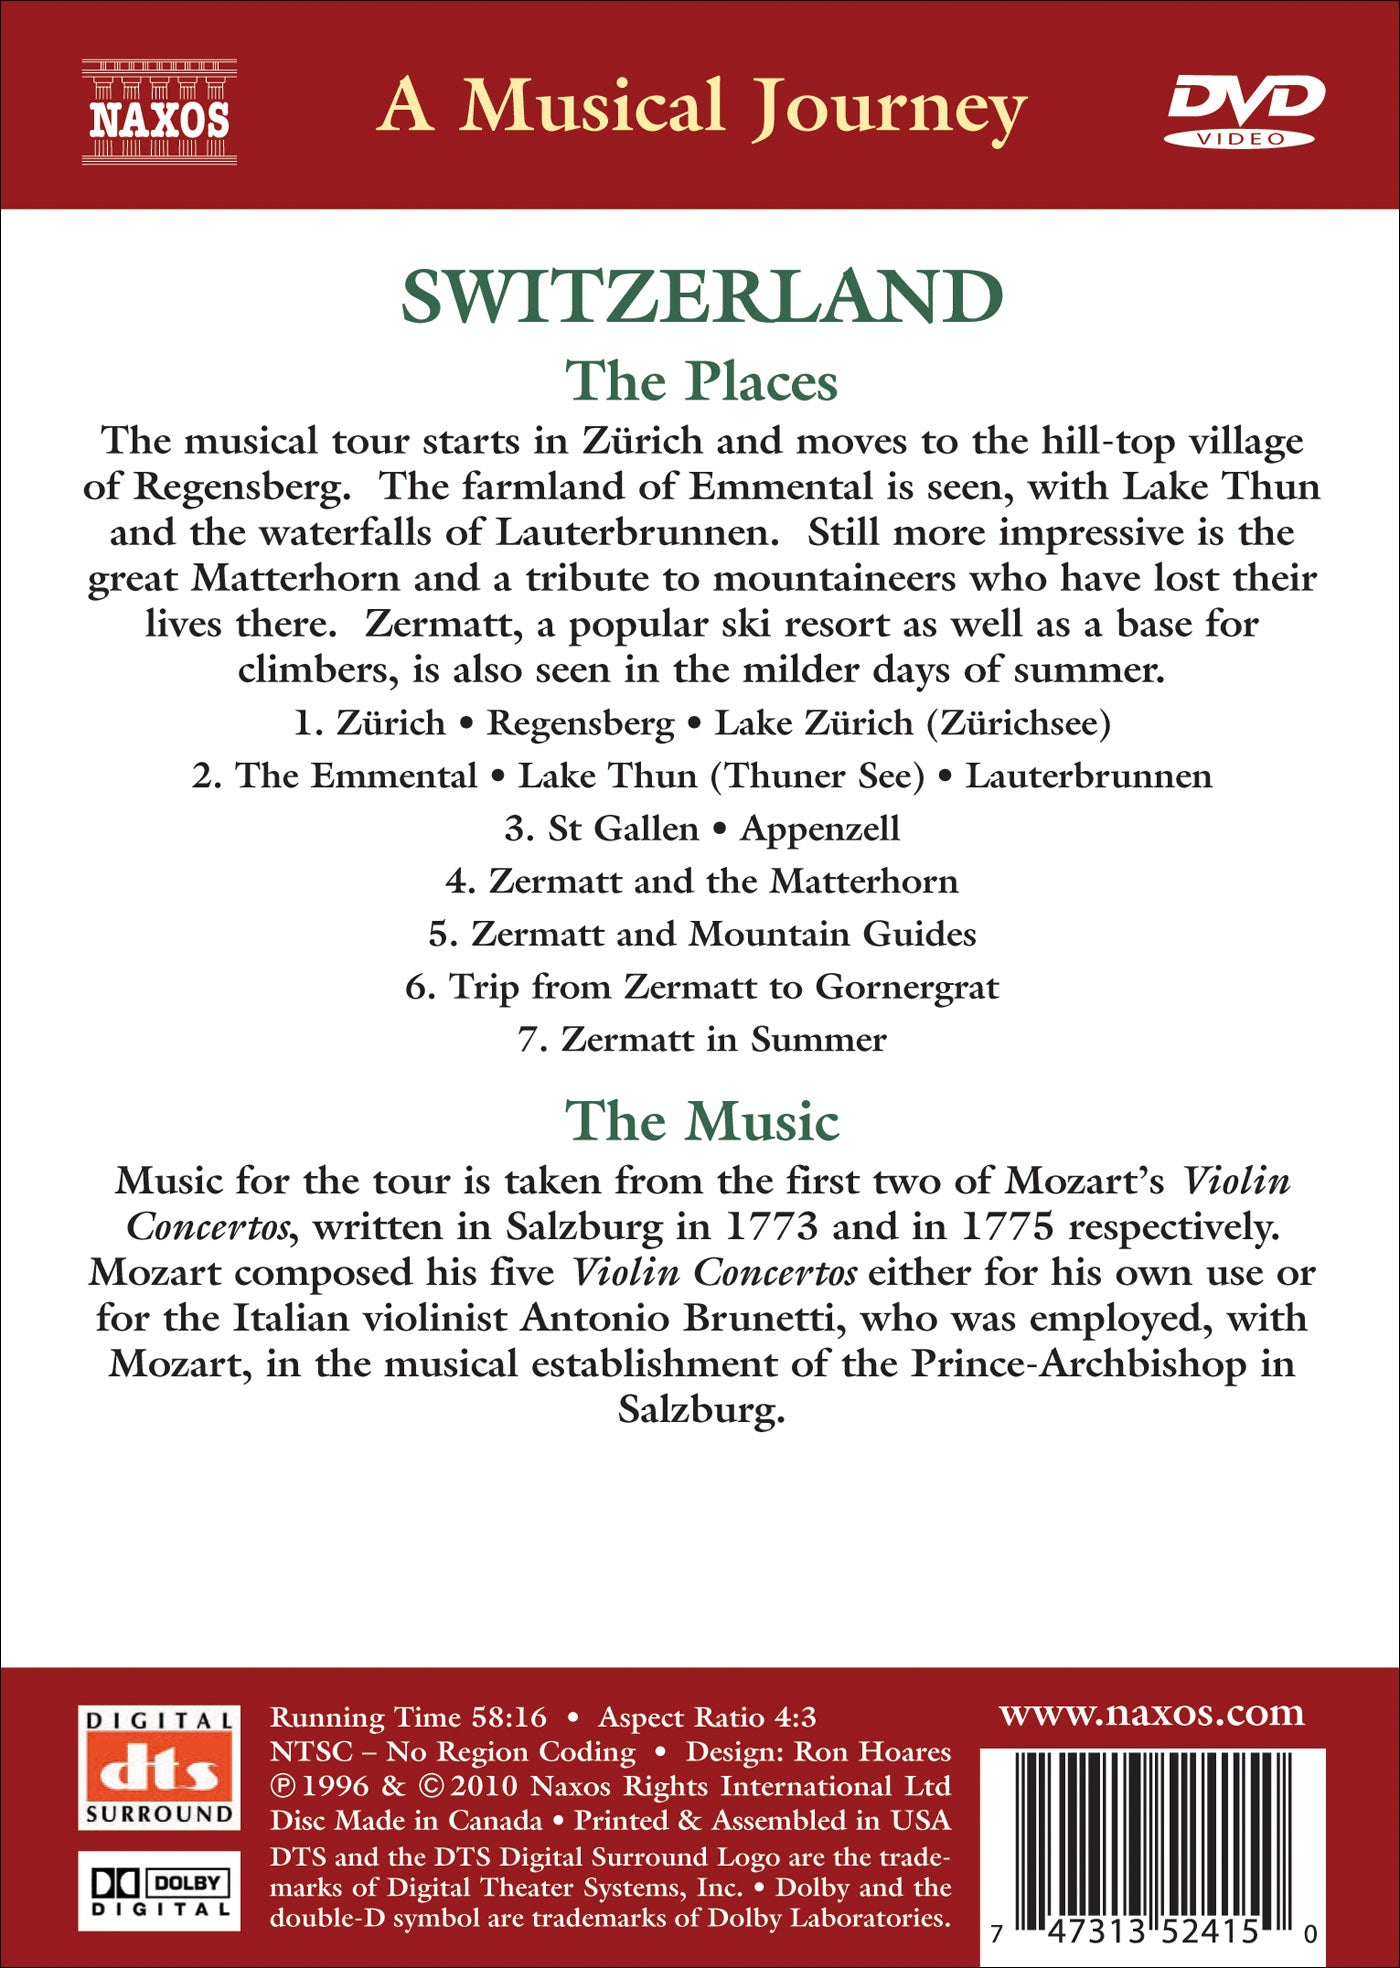 Switzerland: From Zurich to Zermatt